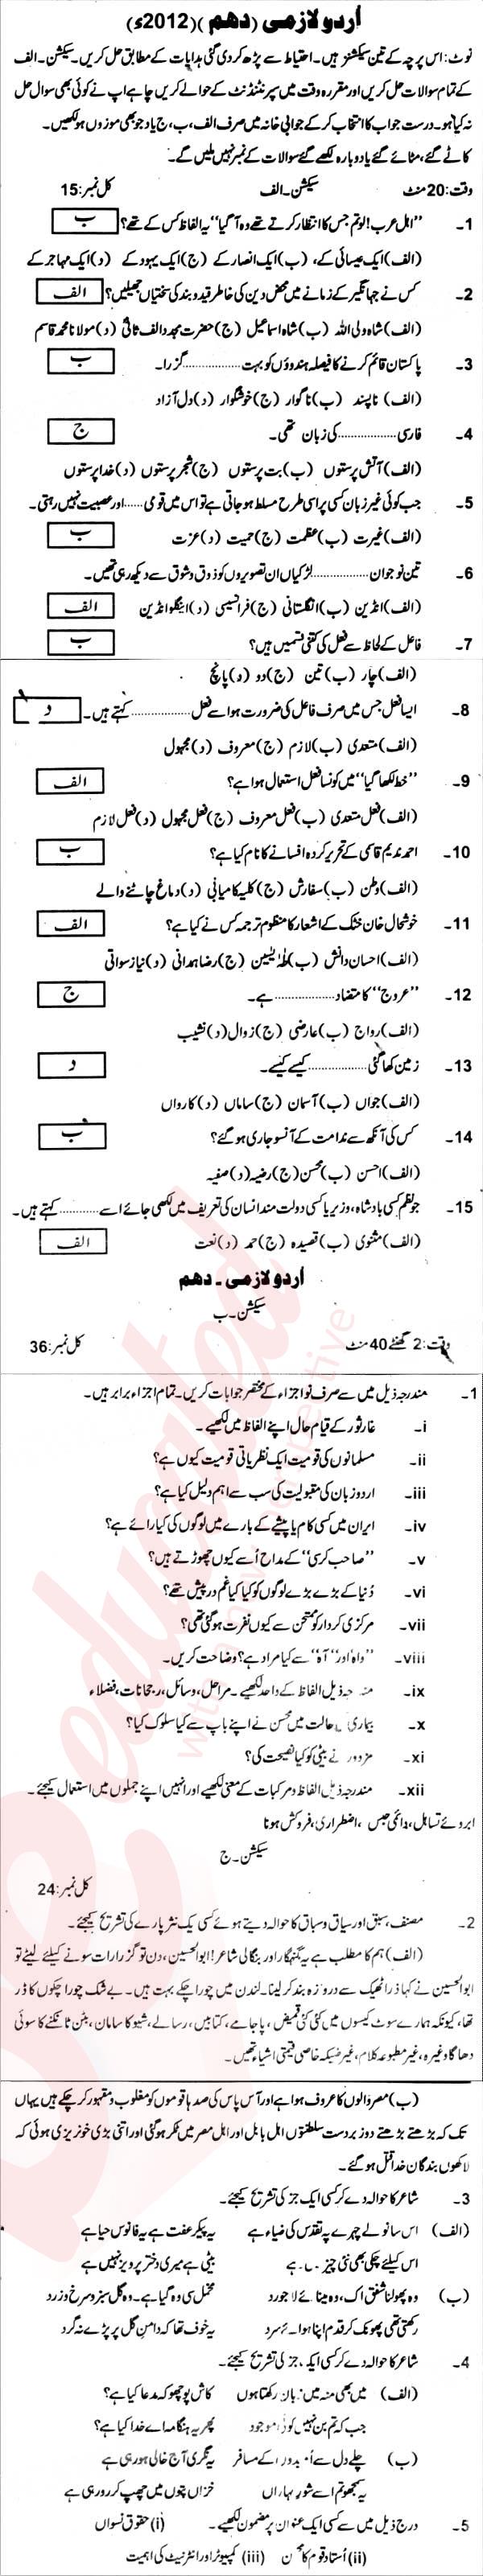 Urdu 10th Urdu Medium Past Paper Group 1 BISE Abbottabad 2012